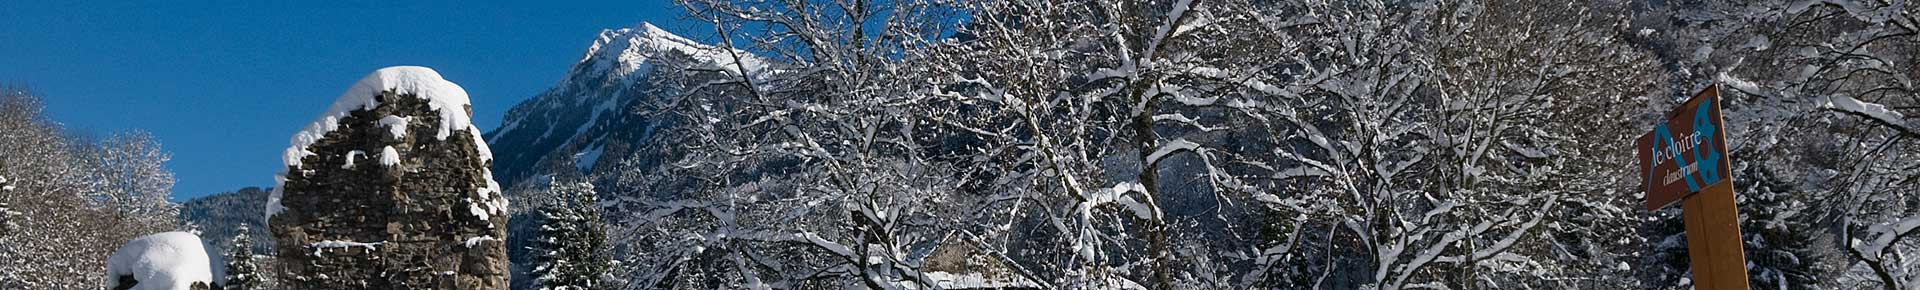 Sites incontournables de la Vallée d'Aulps en hiver